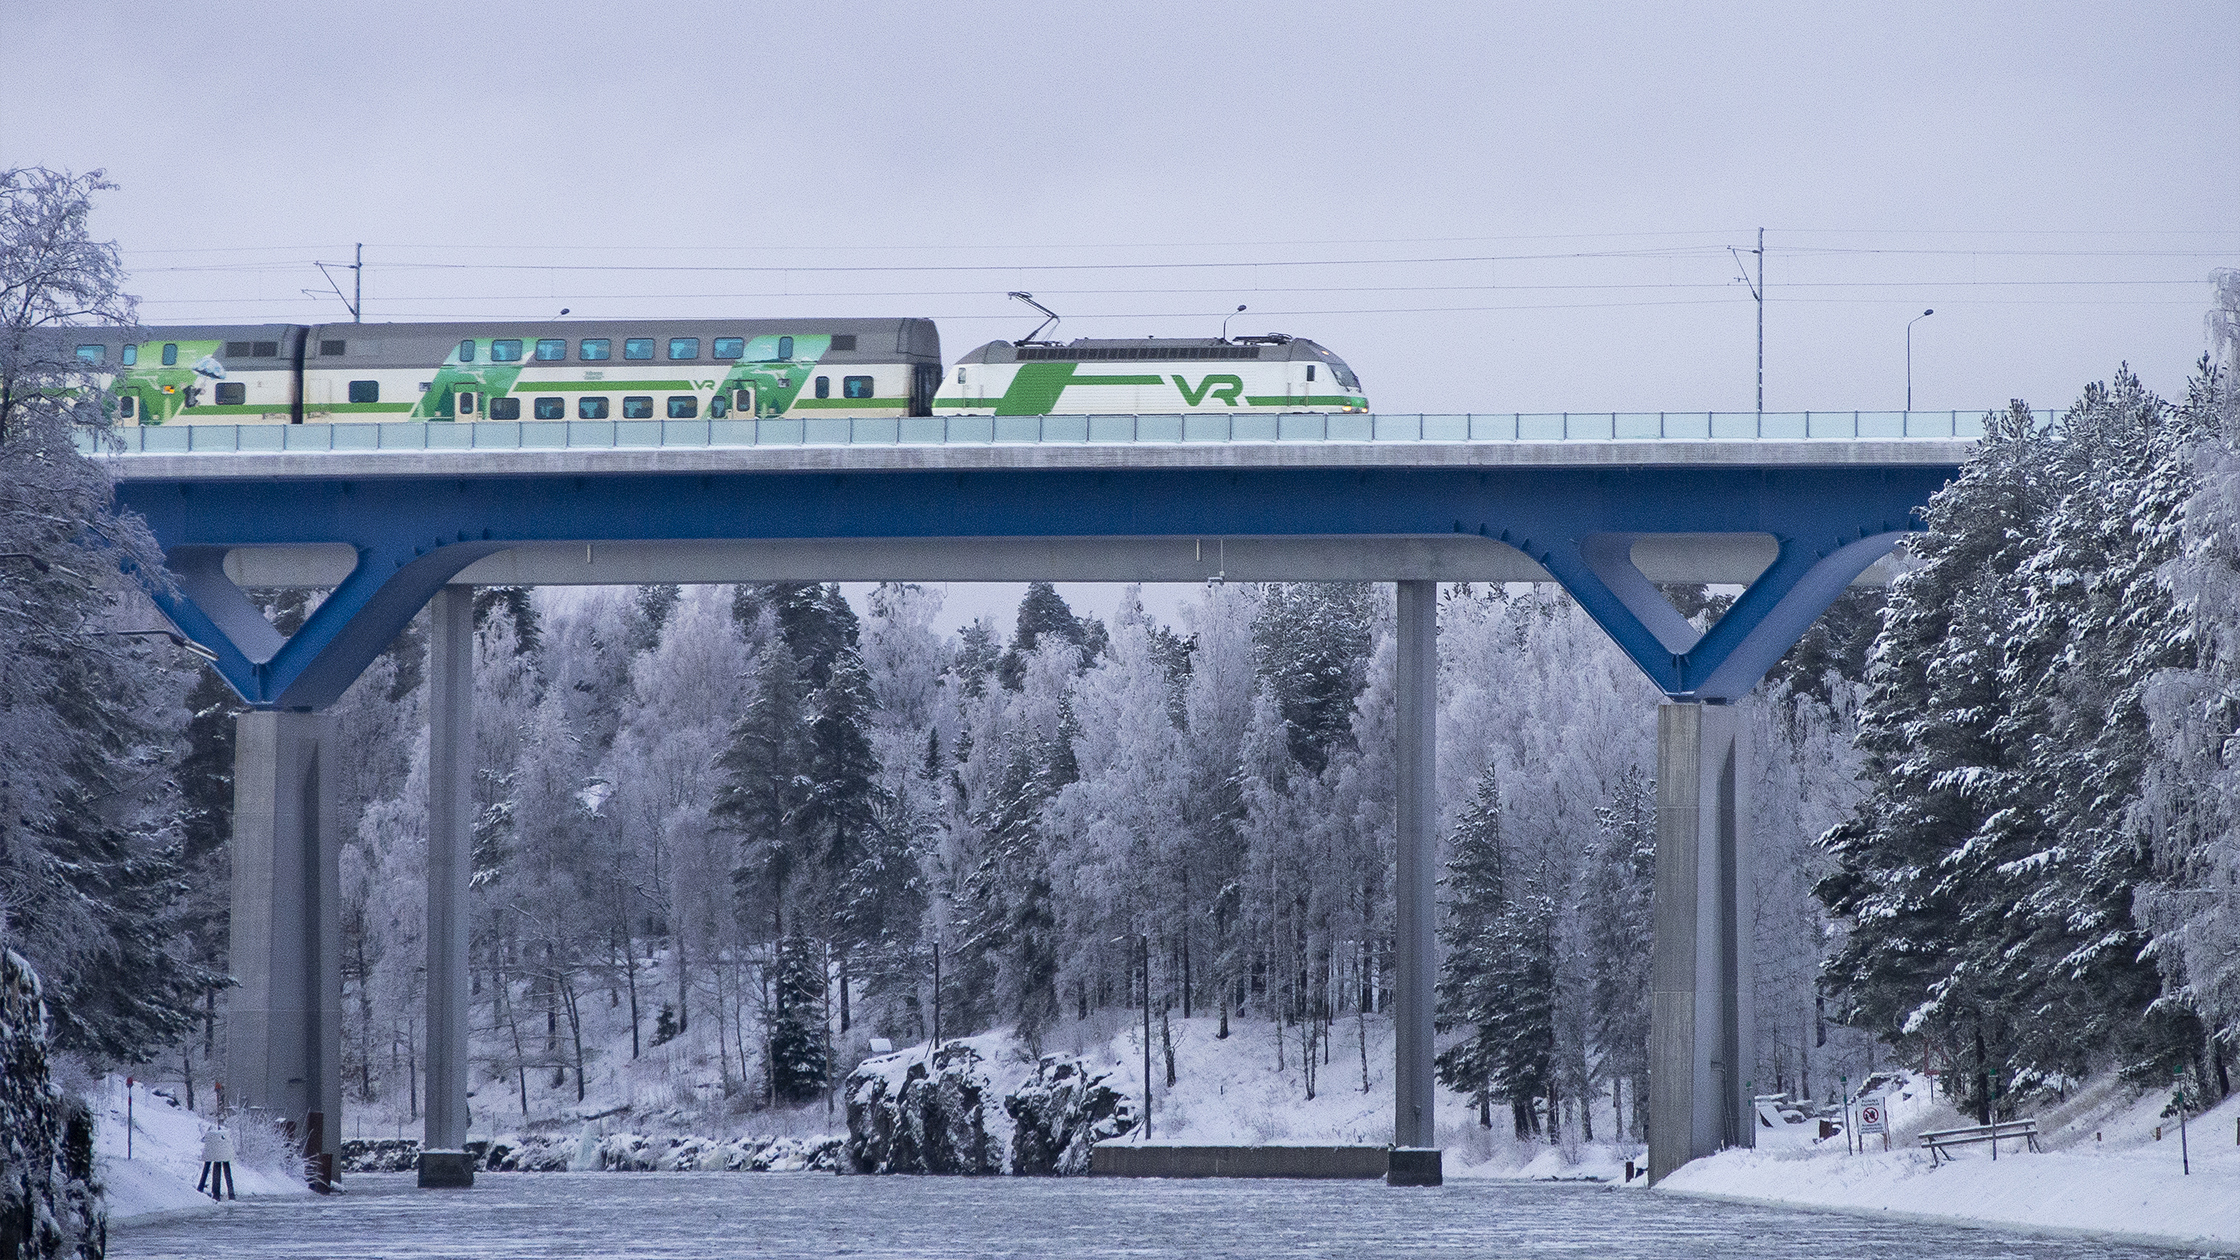 VR:n matkustajajuna kulkee Saimaan kanavan sillalla talvisessa maisemassa.